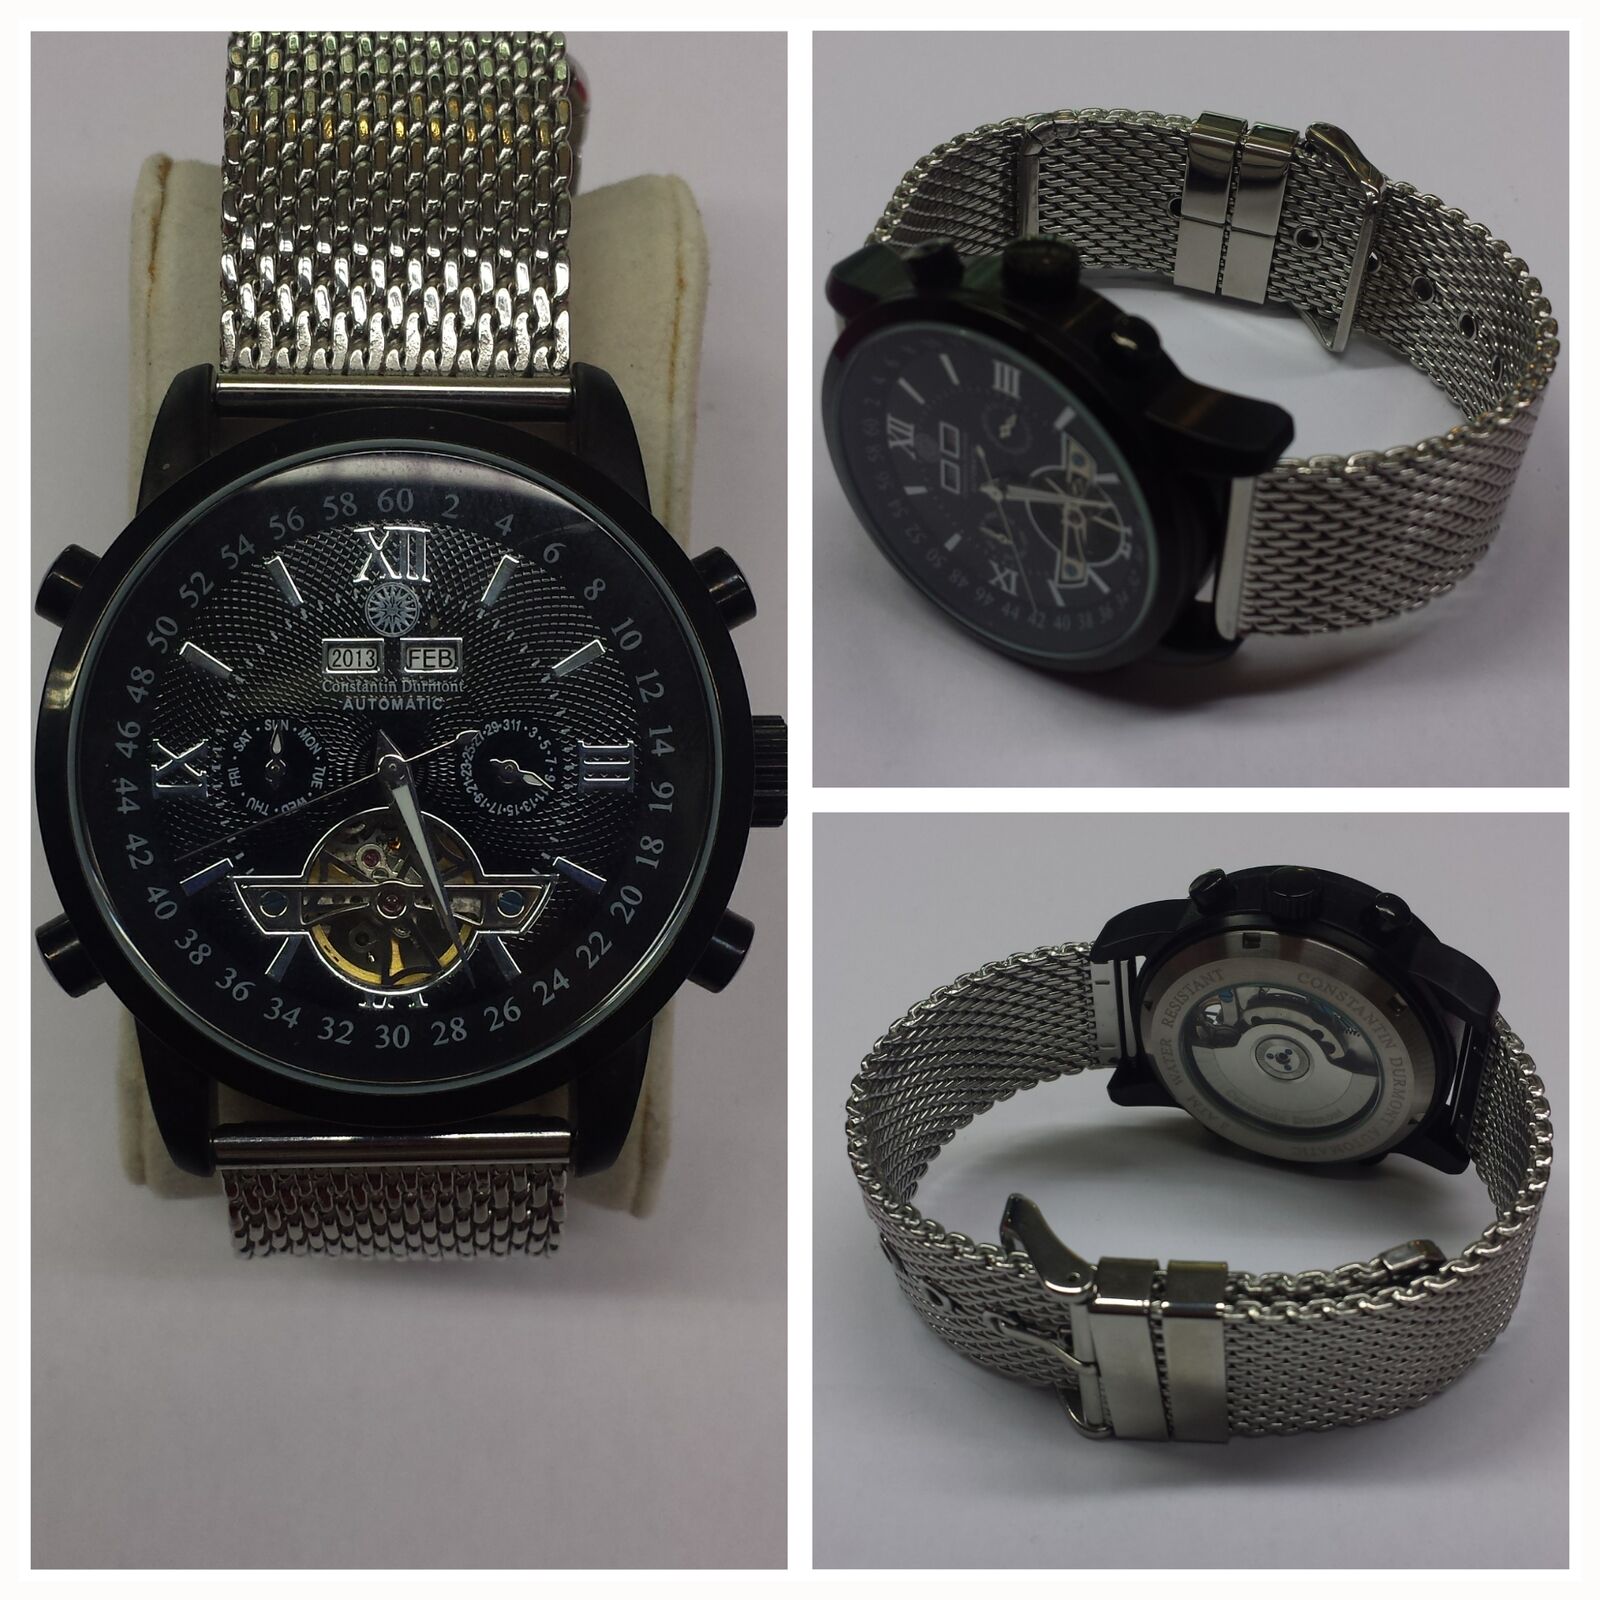 Wristwatch Constantin Durmont functional Automatic